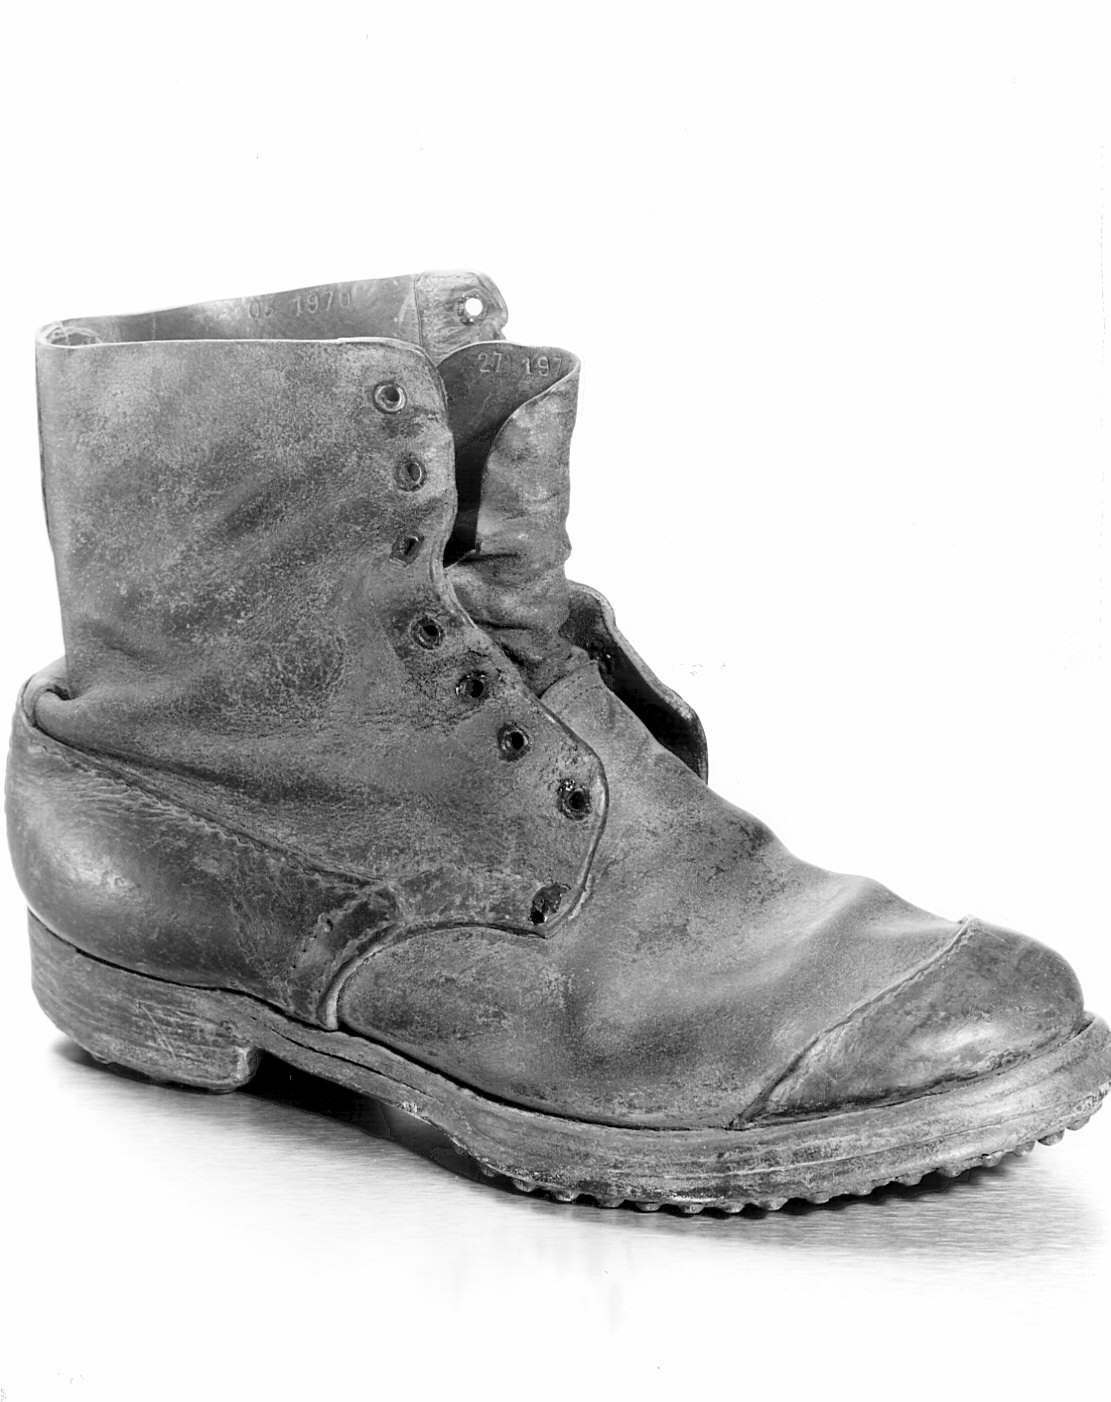 Non rilevato (scarpe da uomo) - manifattura (1915/ 1915)